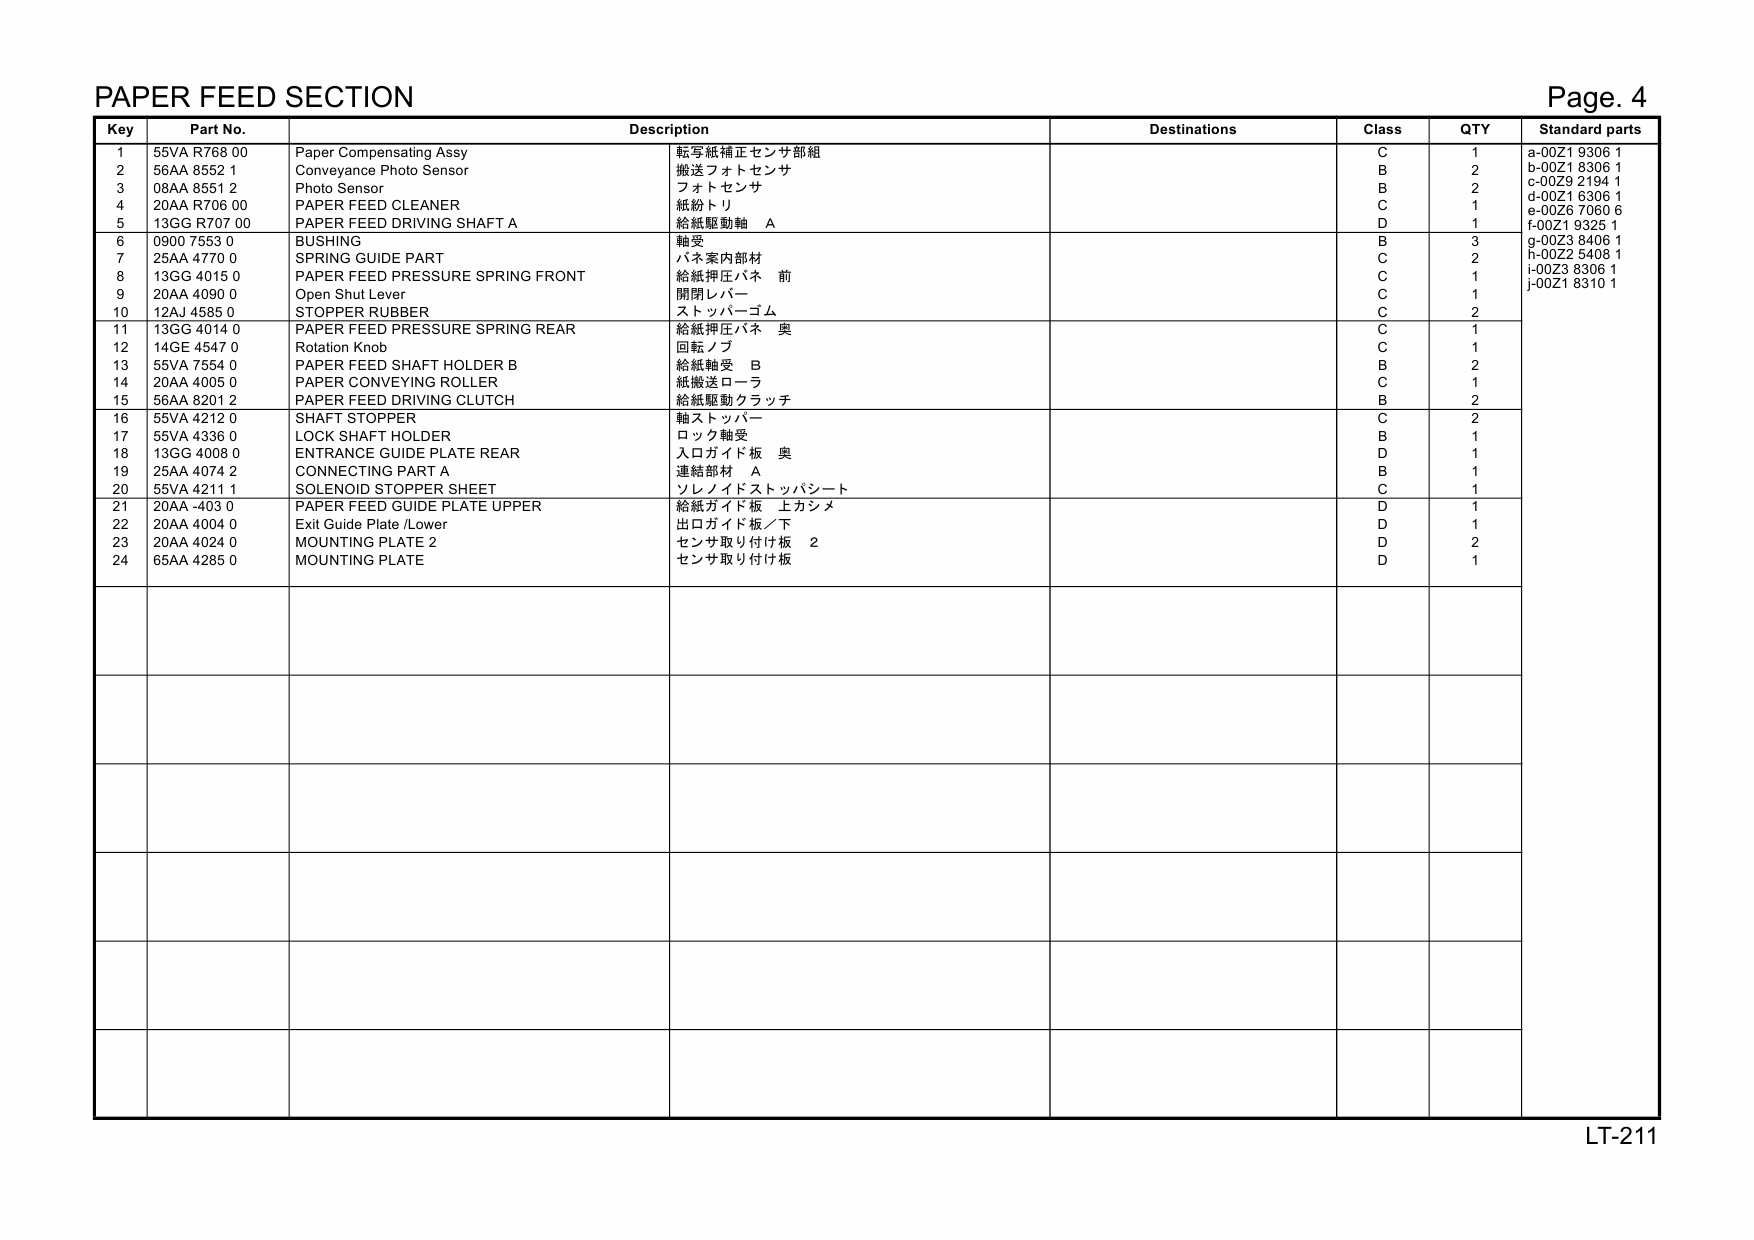 Konica-Minolta Options LT-211 20AA Parts Manual-5